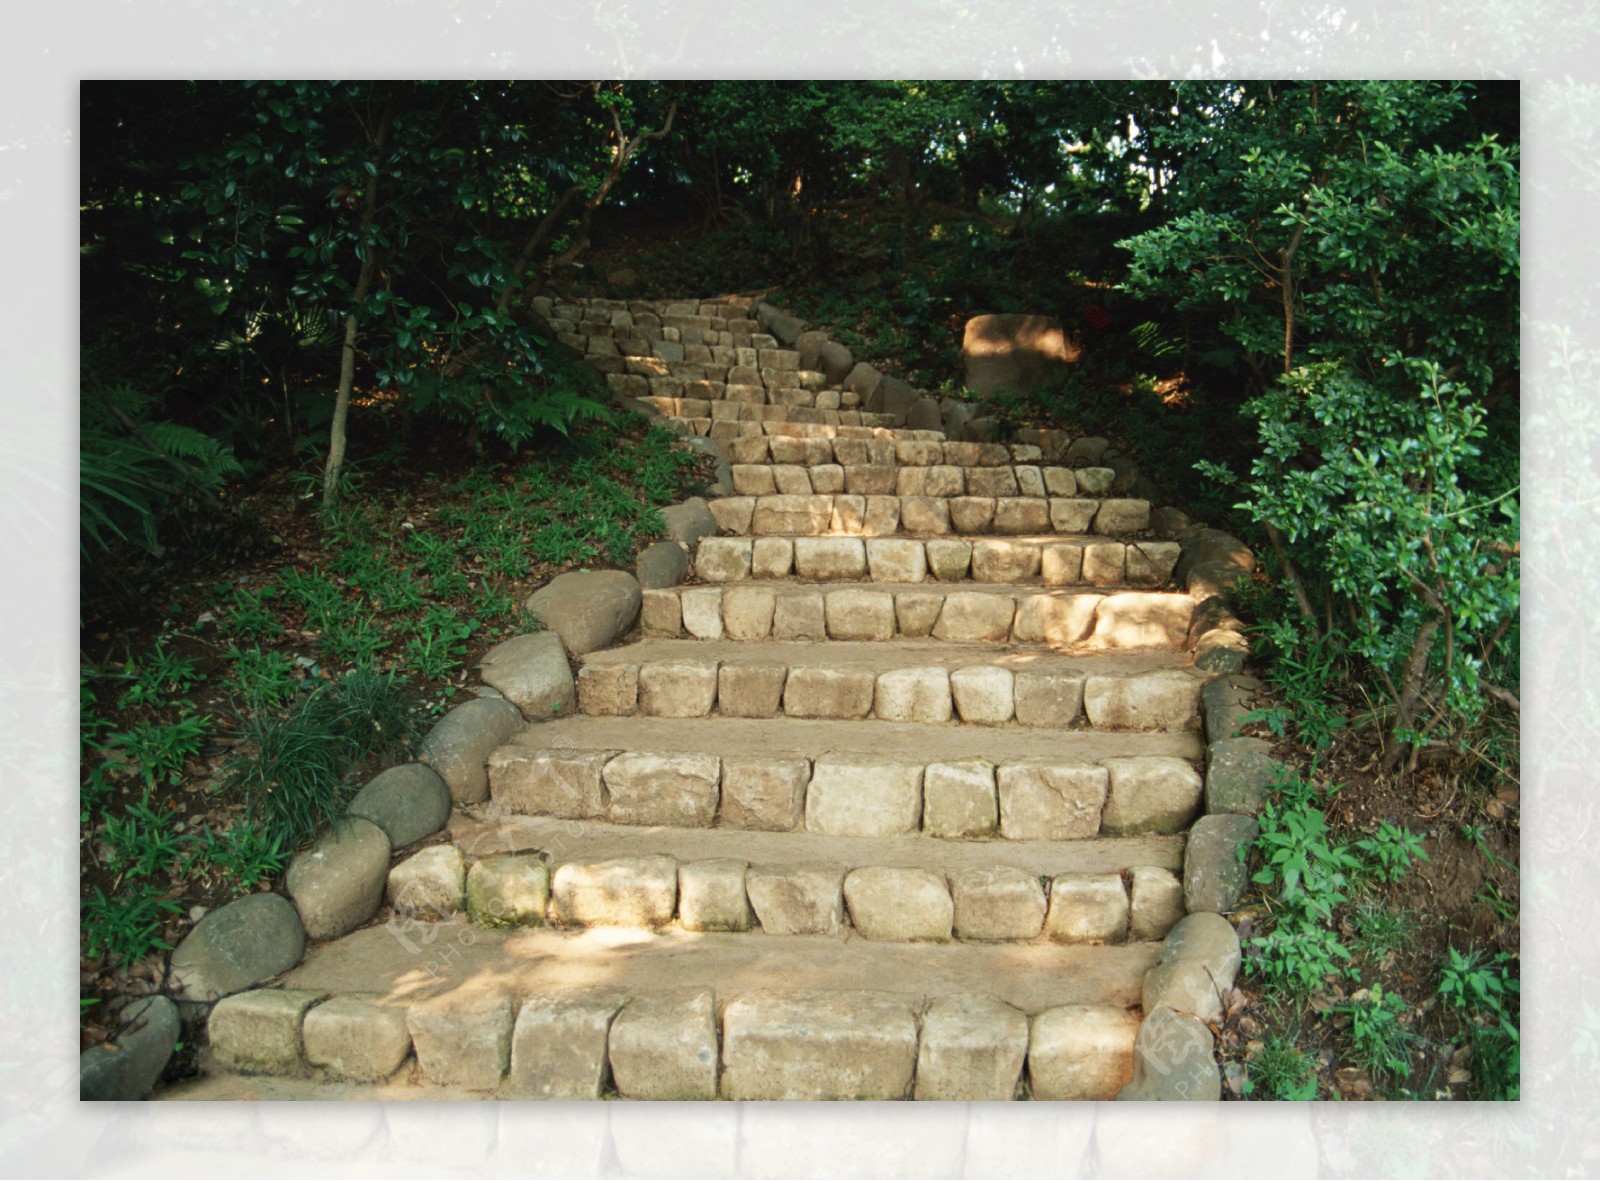 石阶梯道路风景图片